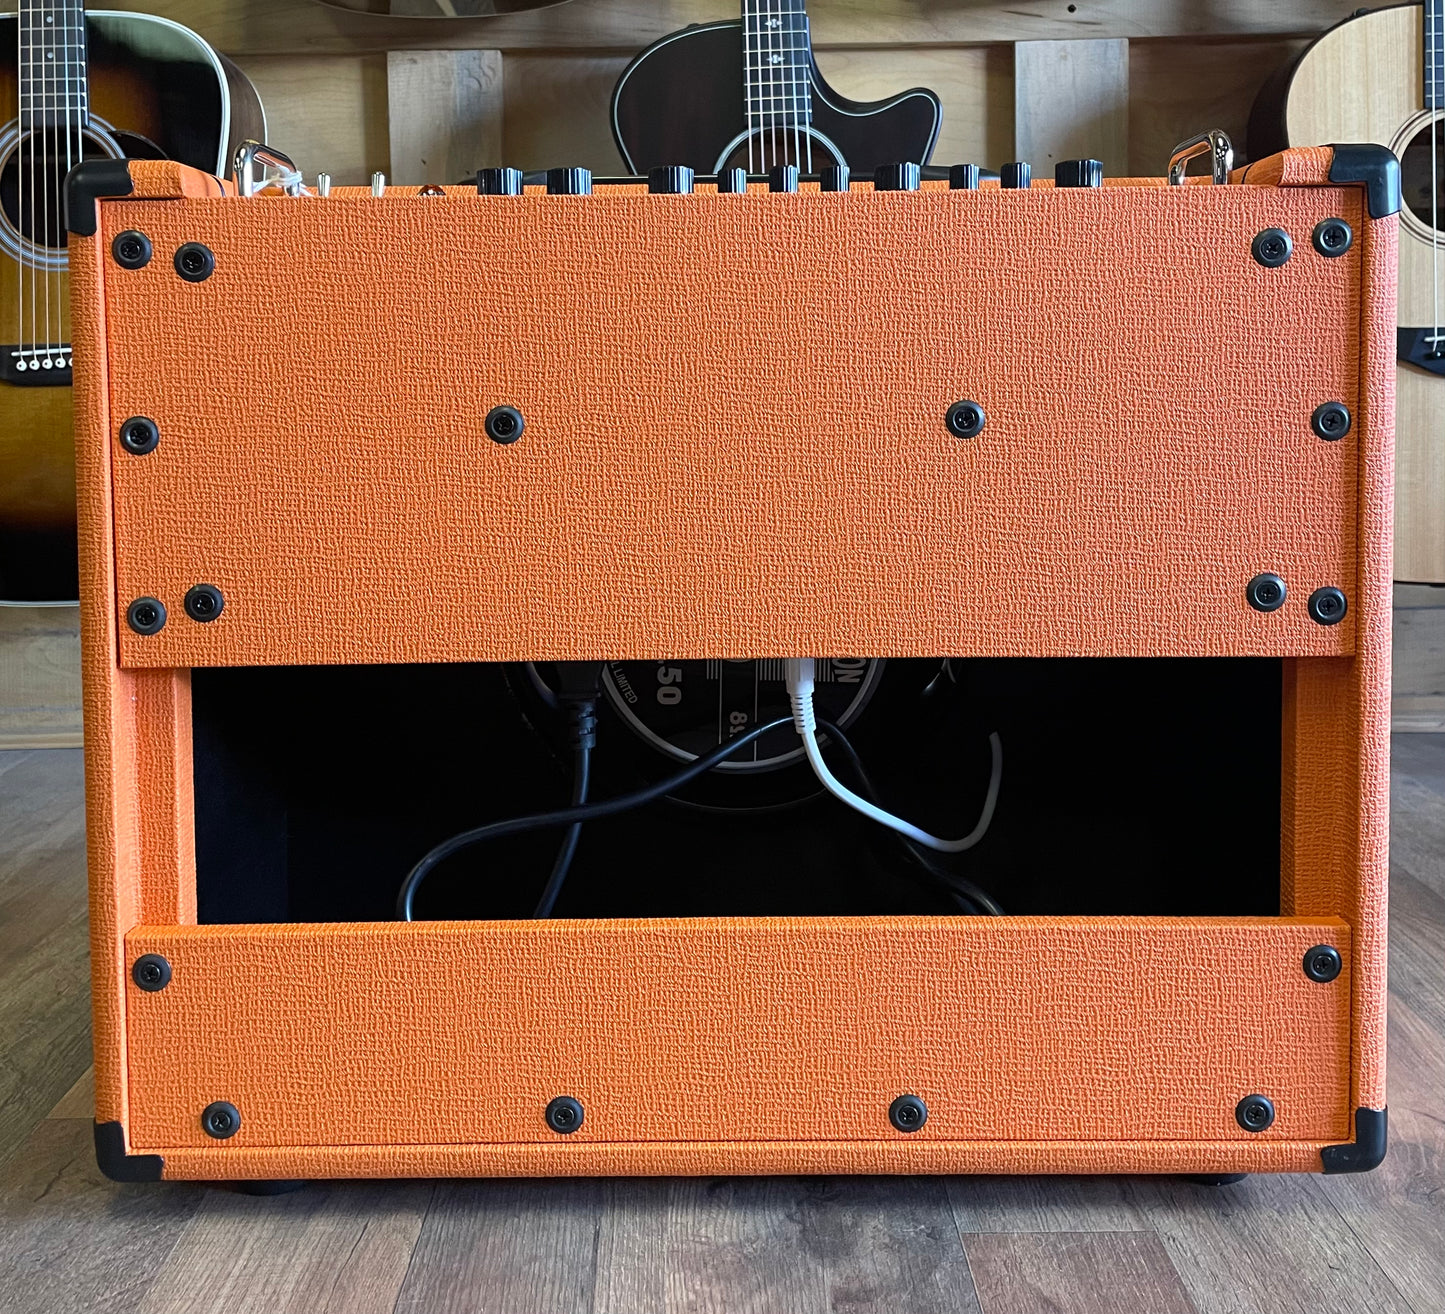 Orange Super Crush 100 - 100-watt Solid-state 1 x 12" Combo - Orange (NEW)